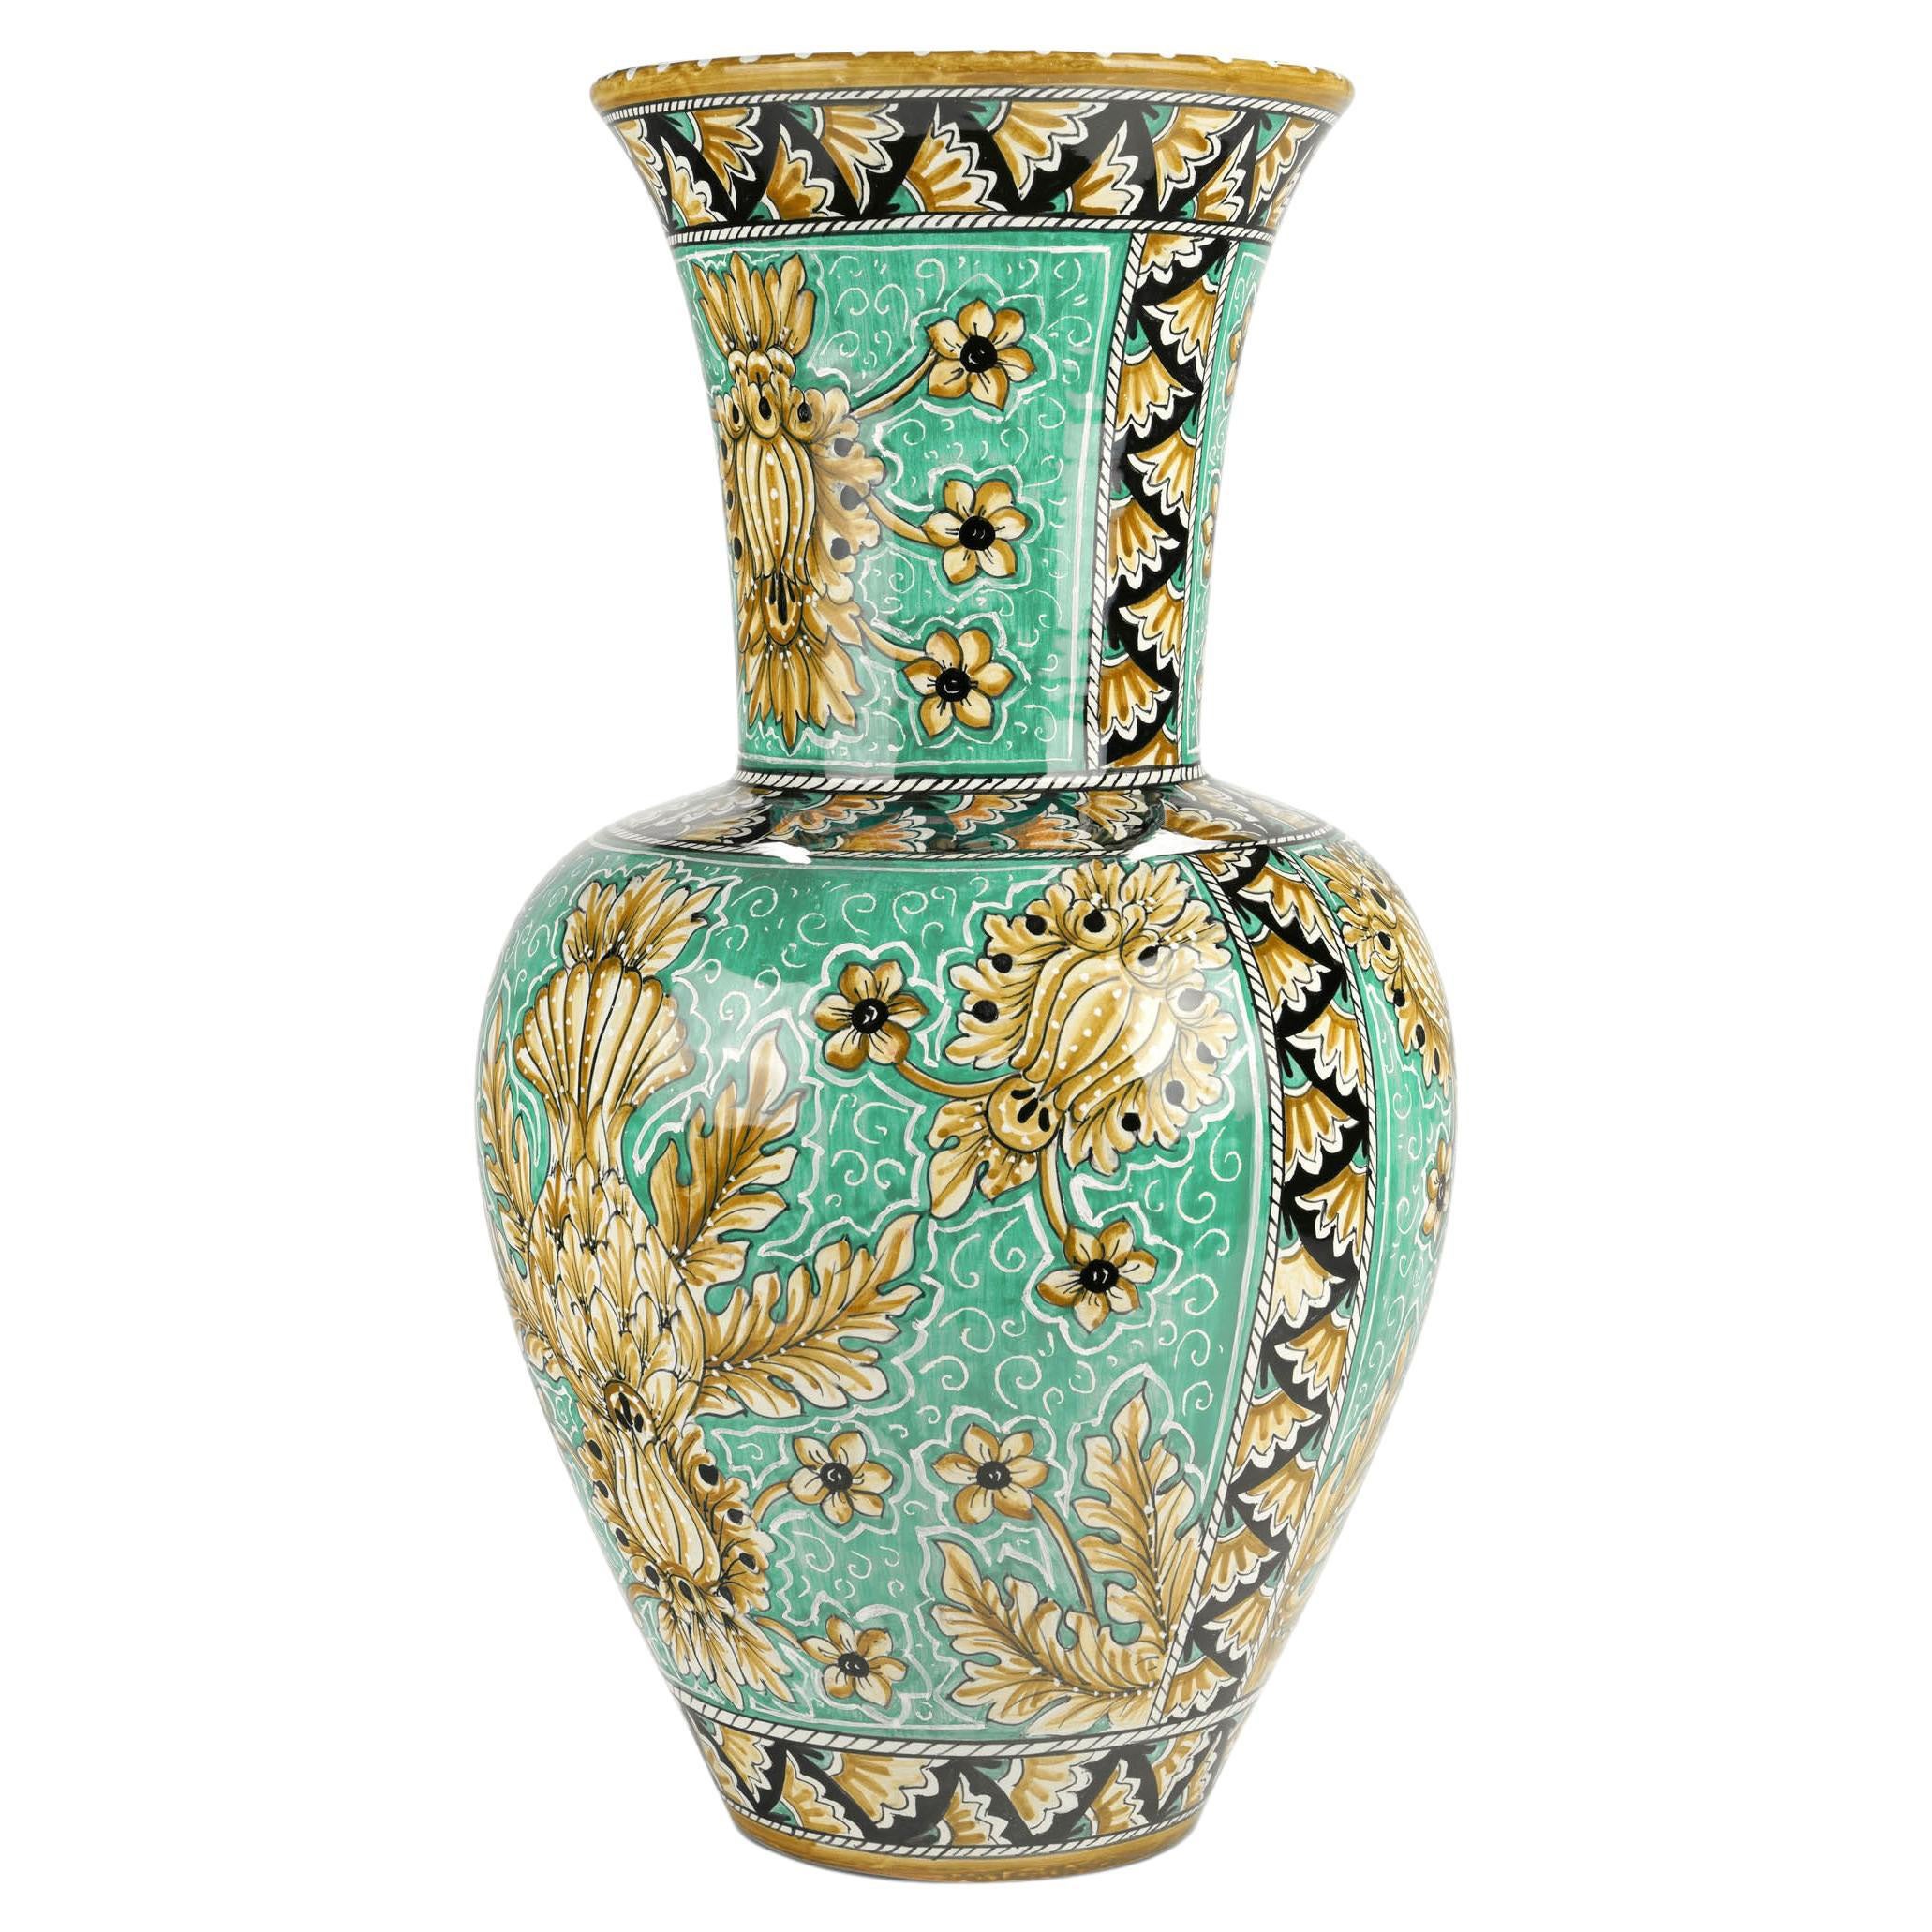 Vase Vessel Ceramic Centerpiece Ornament Aquamarine Majolica Flower Holder Italy